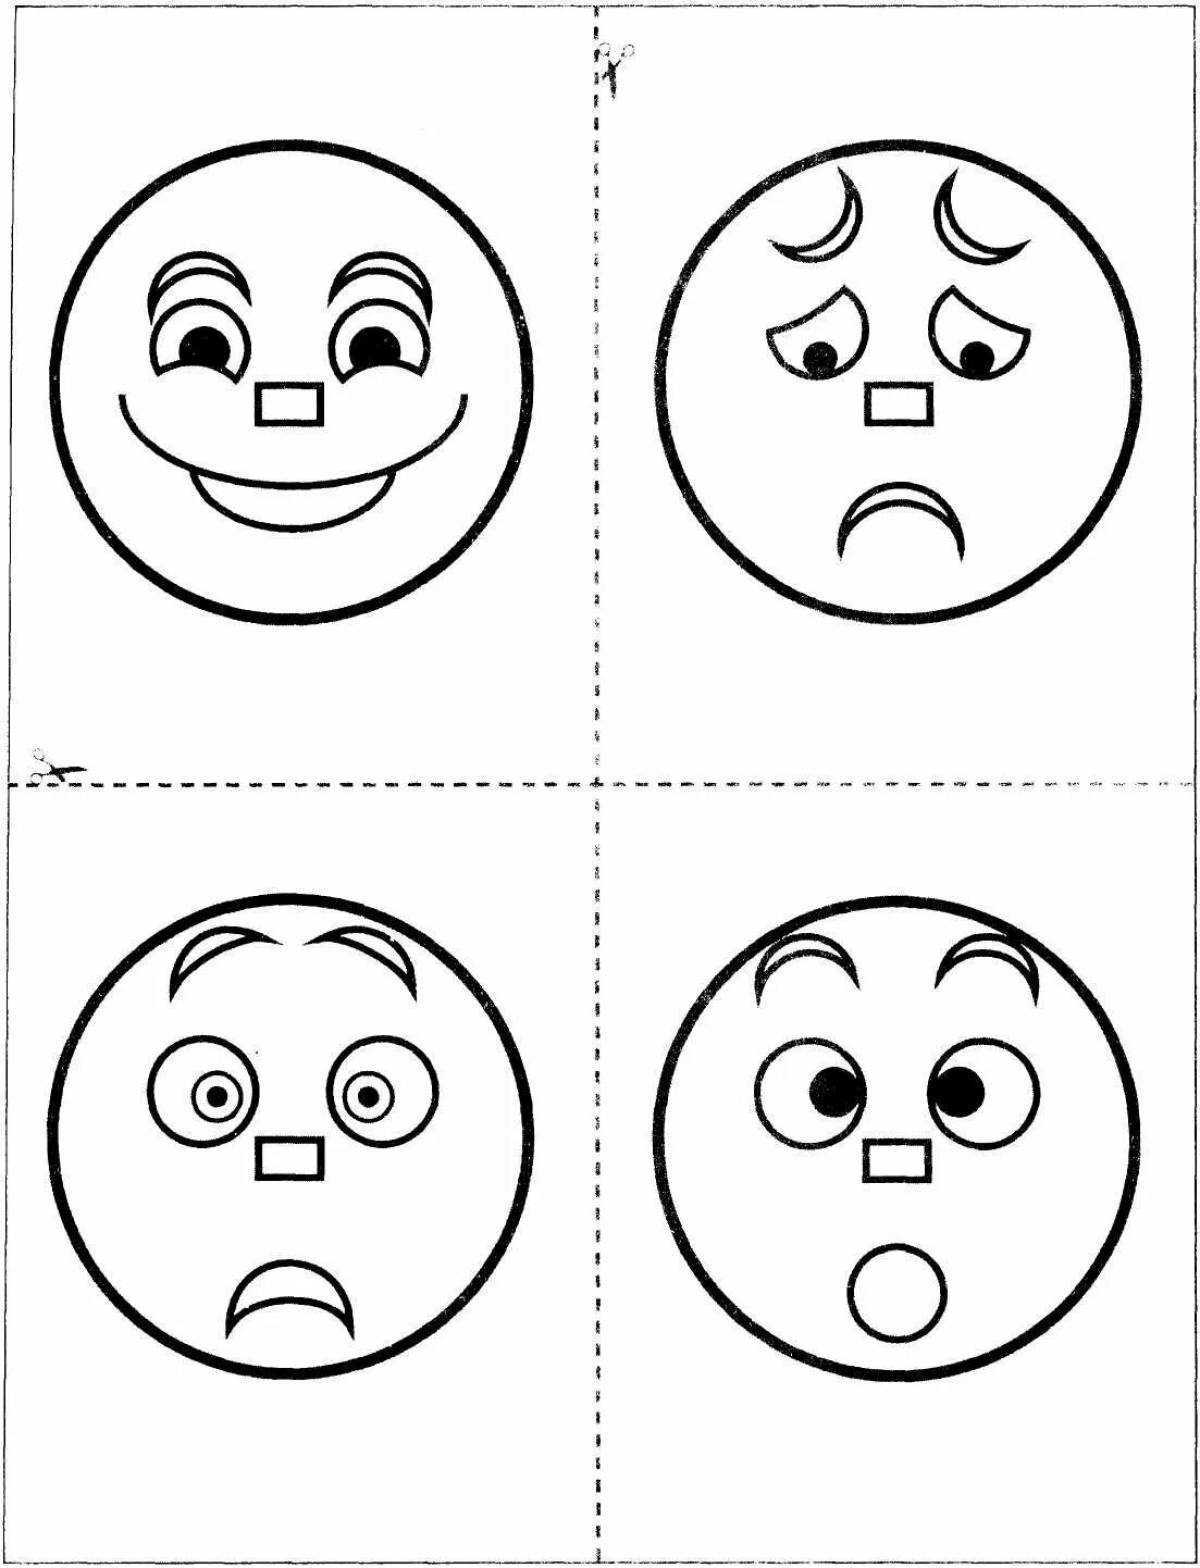 Nervous emotion coloring book for kids